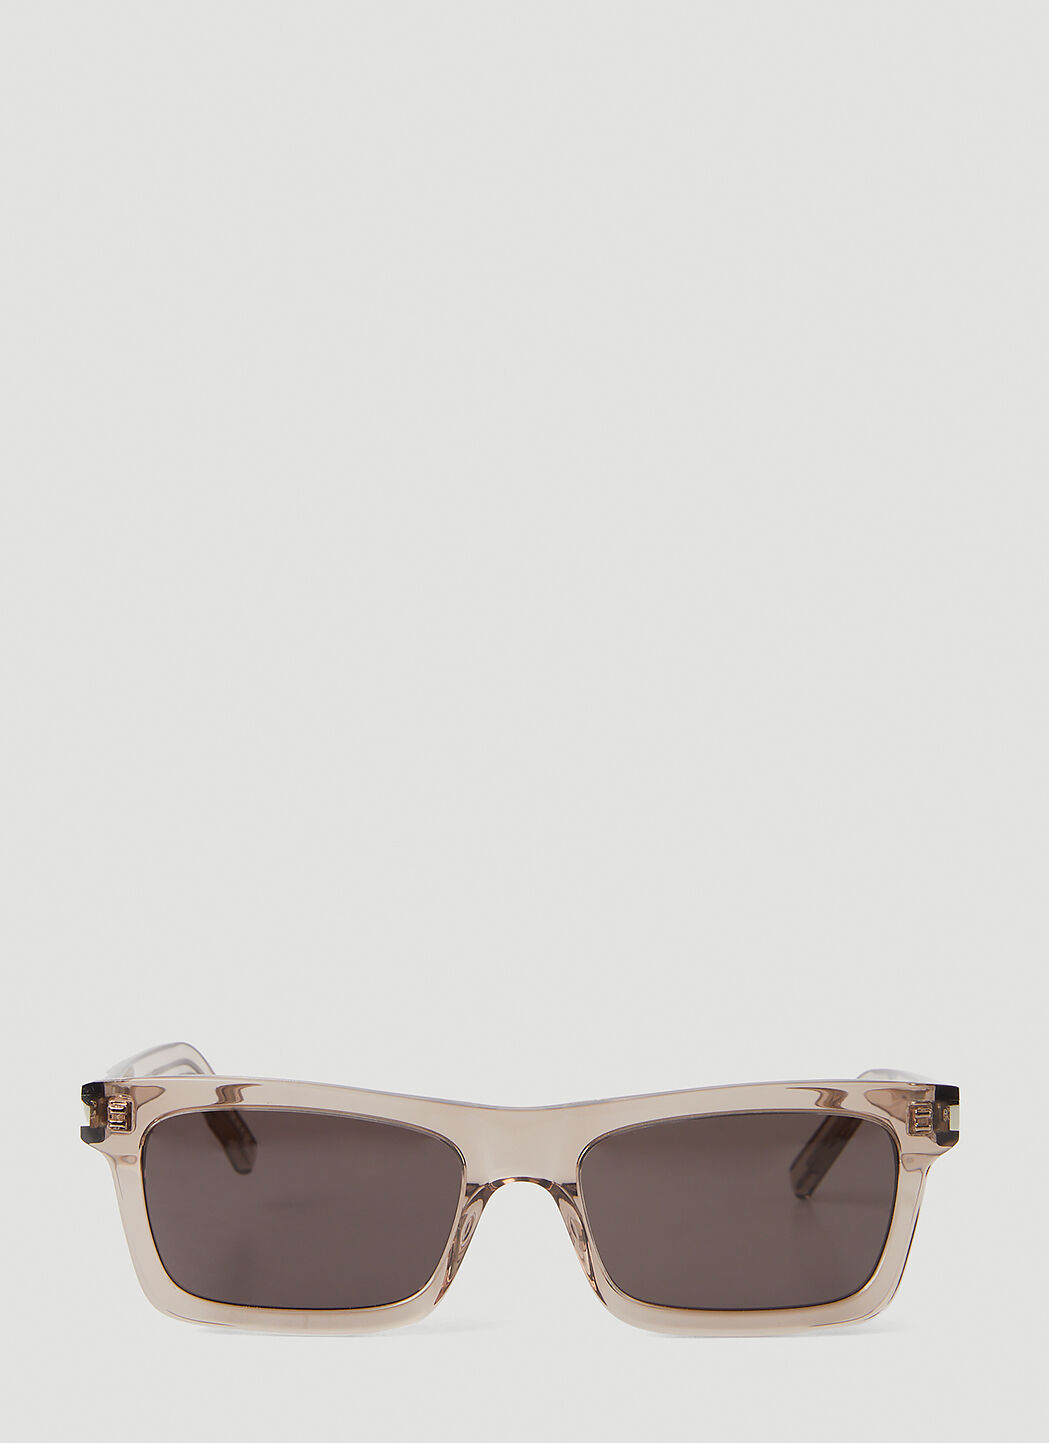 Saint Laurent SL 316 BETTY Sunglasses at 165,00 € ➤ Authorized Vendor